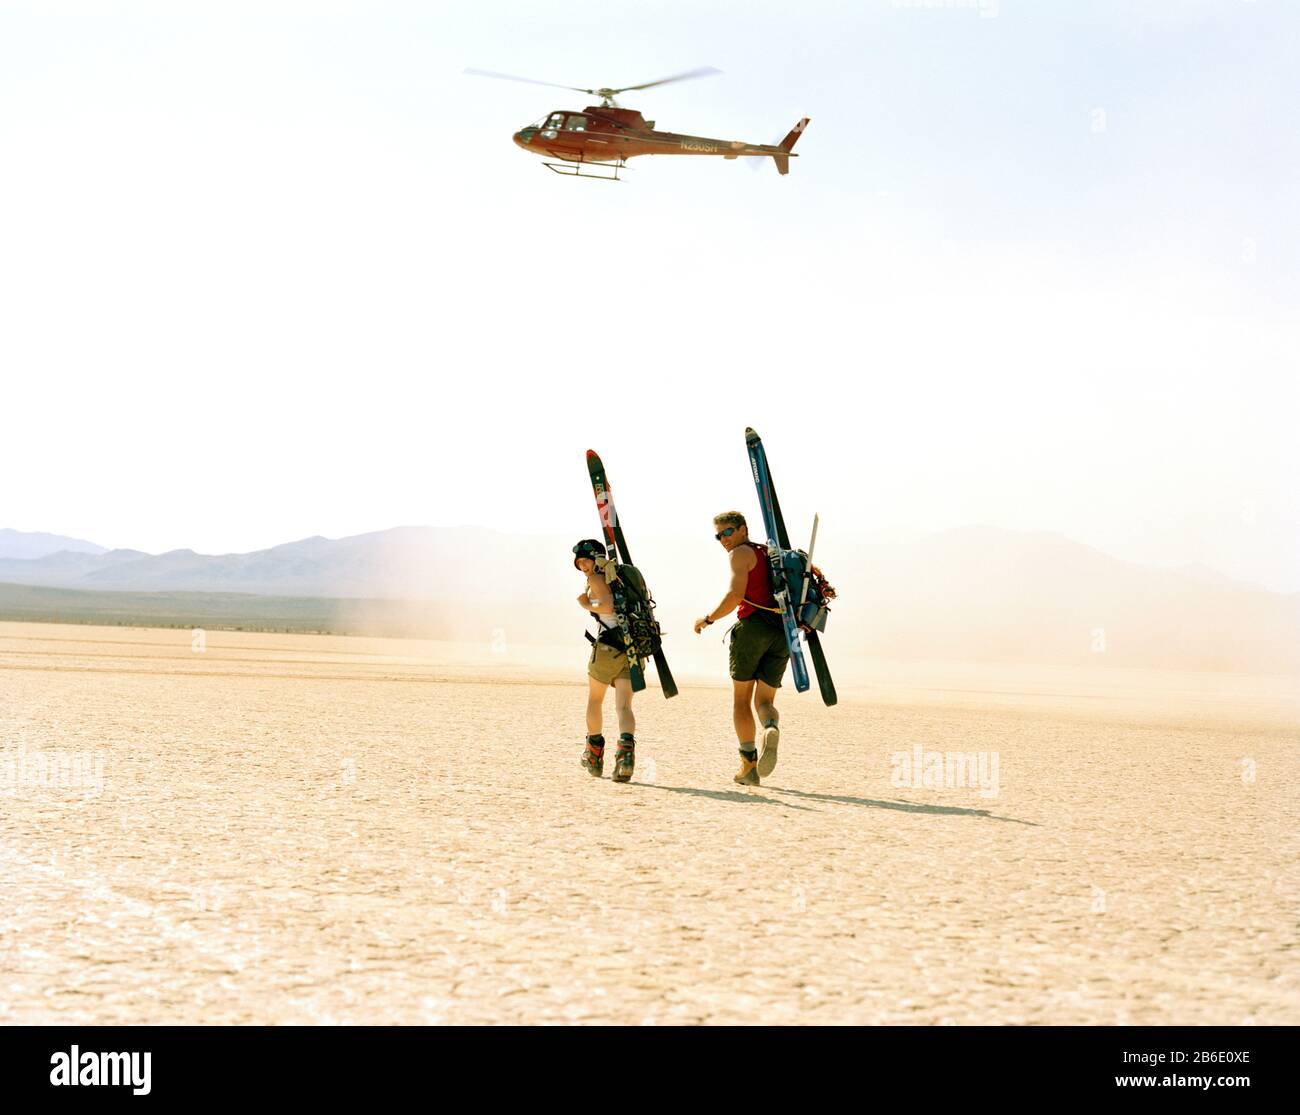 Porträt eines abenteuerlustigen jungen Paares, das Sportausrüstung auf dem Rücken unter dem schwebenden Hubschrauber trägt, während er durch eine Wüste spaziert. Stockfoto